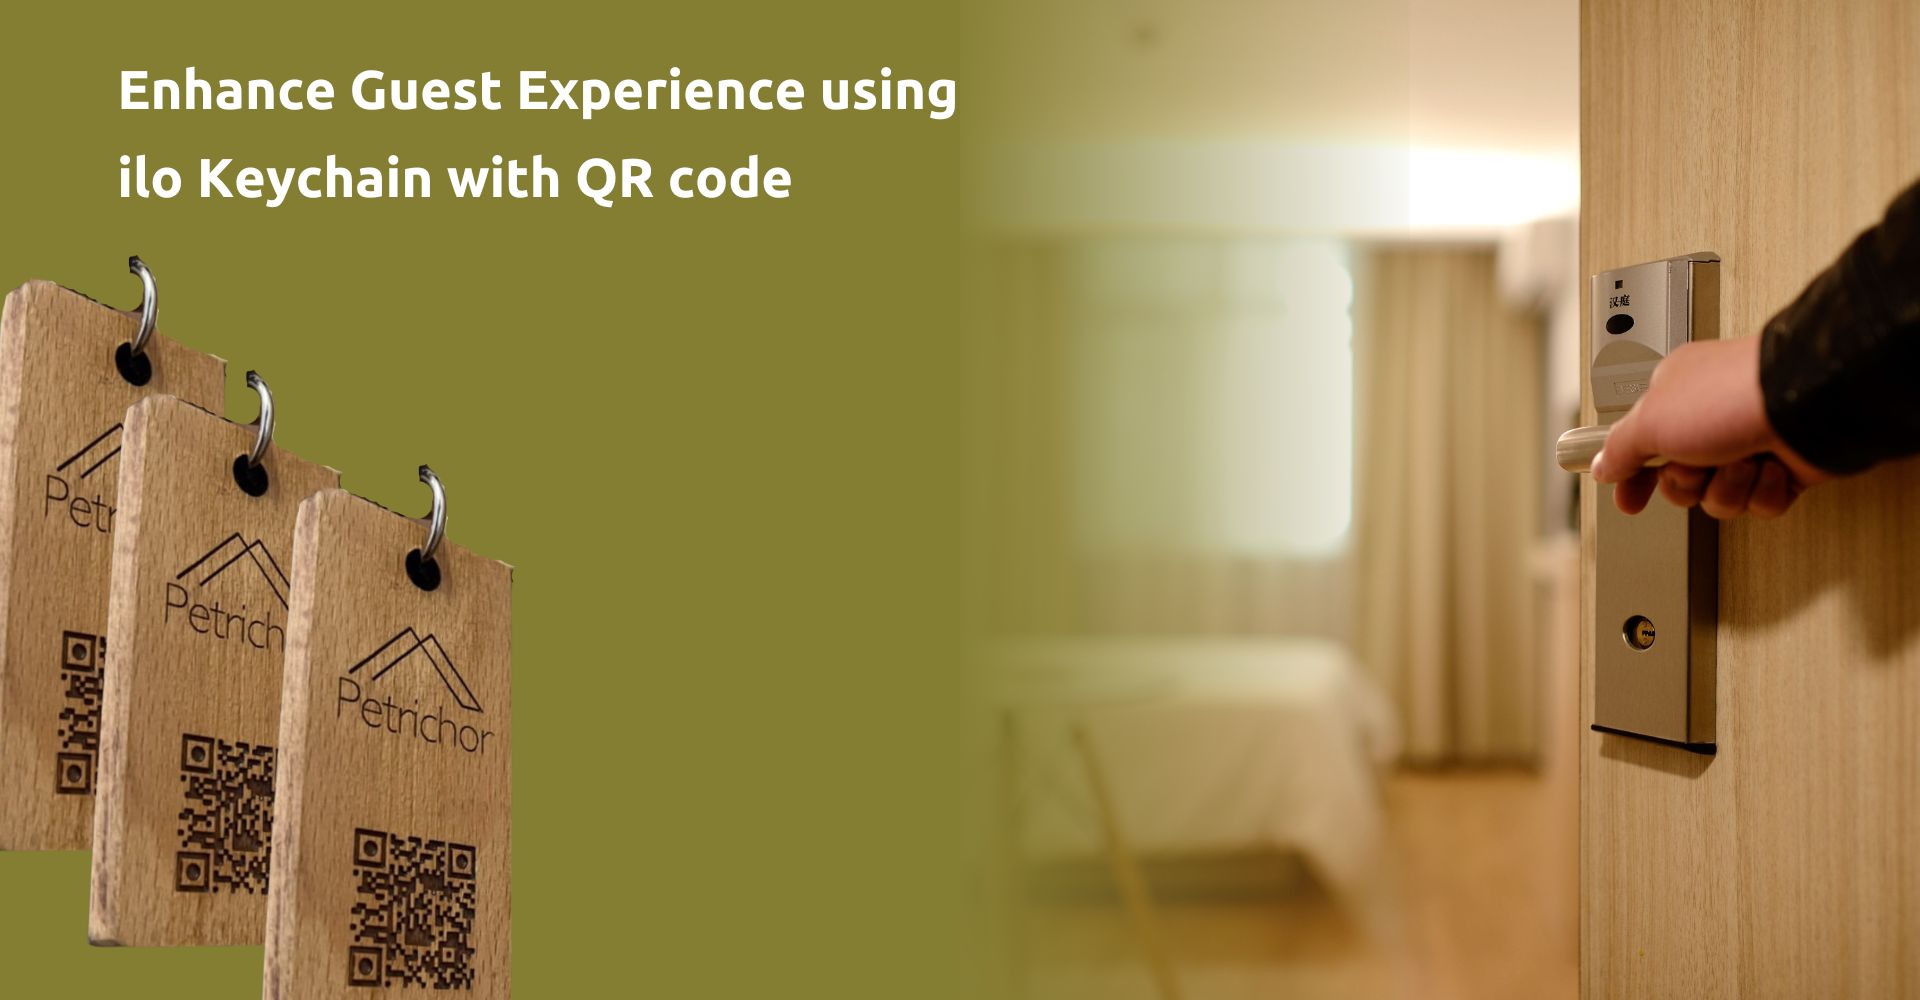 Μπρελόκ για ενοικιαζόμενα δωμάτια με κωδικό QR: Ενίσχυση της εμπειρίας φιλοξενίας